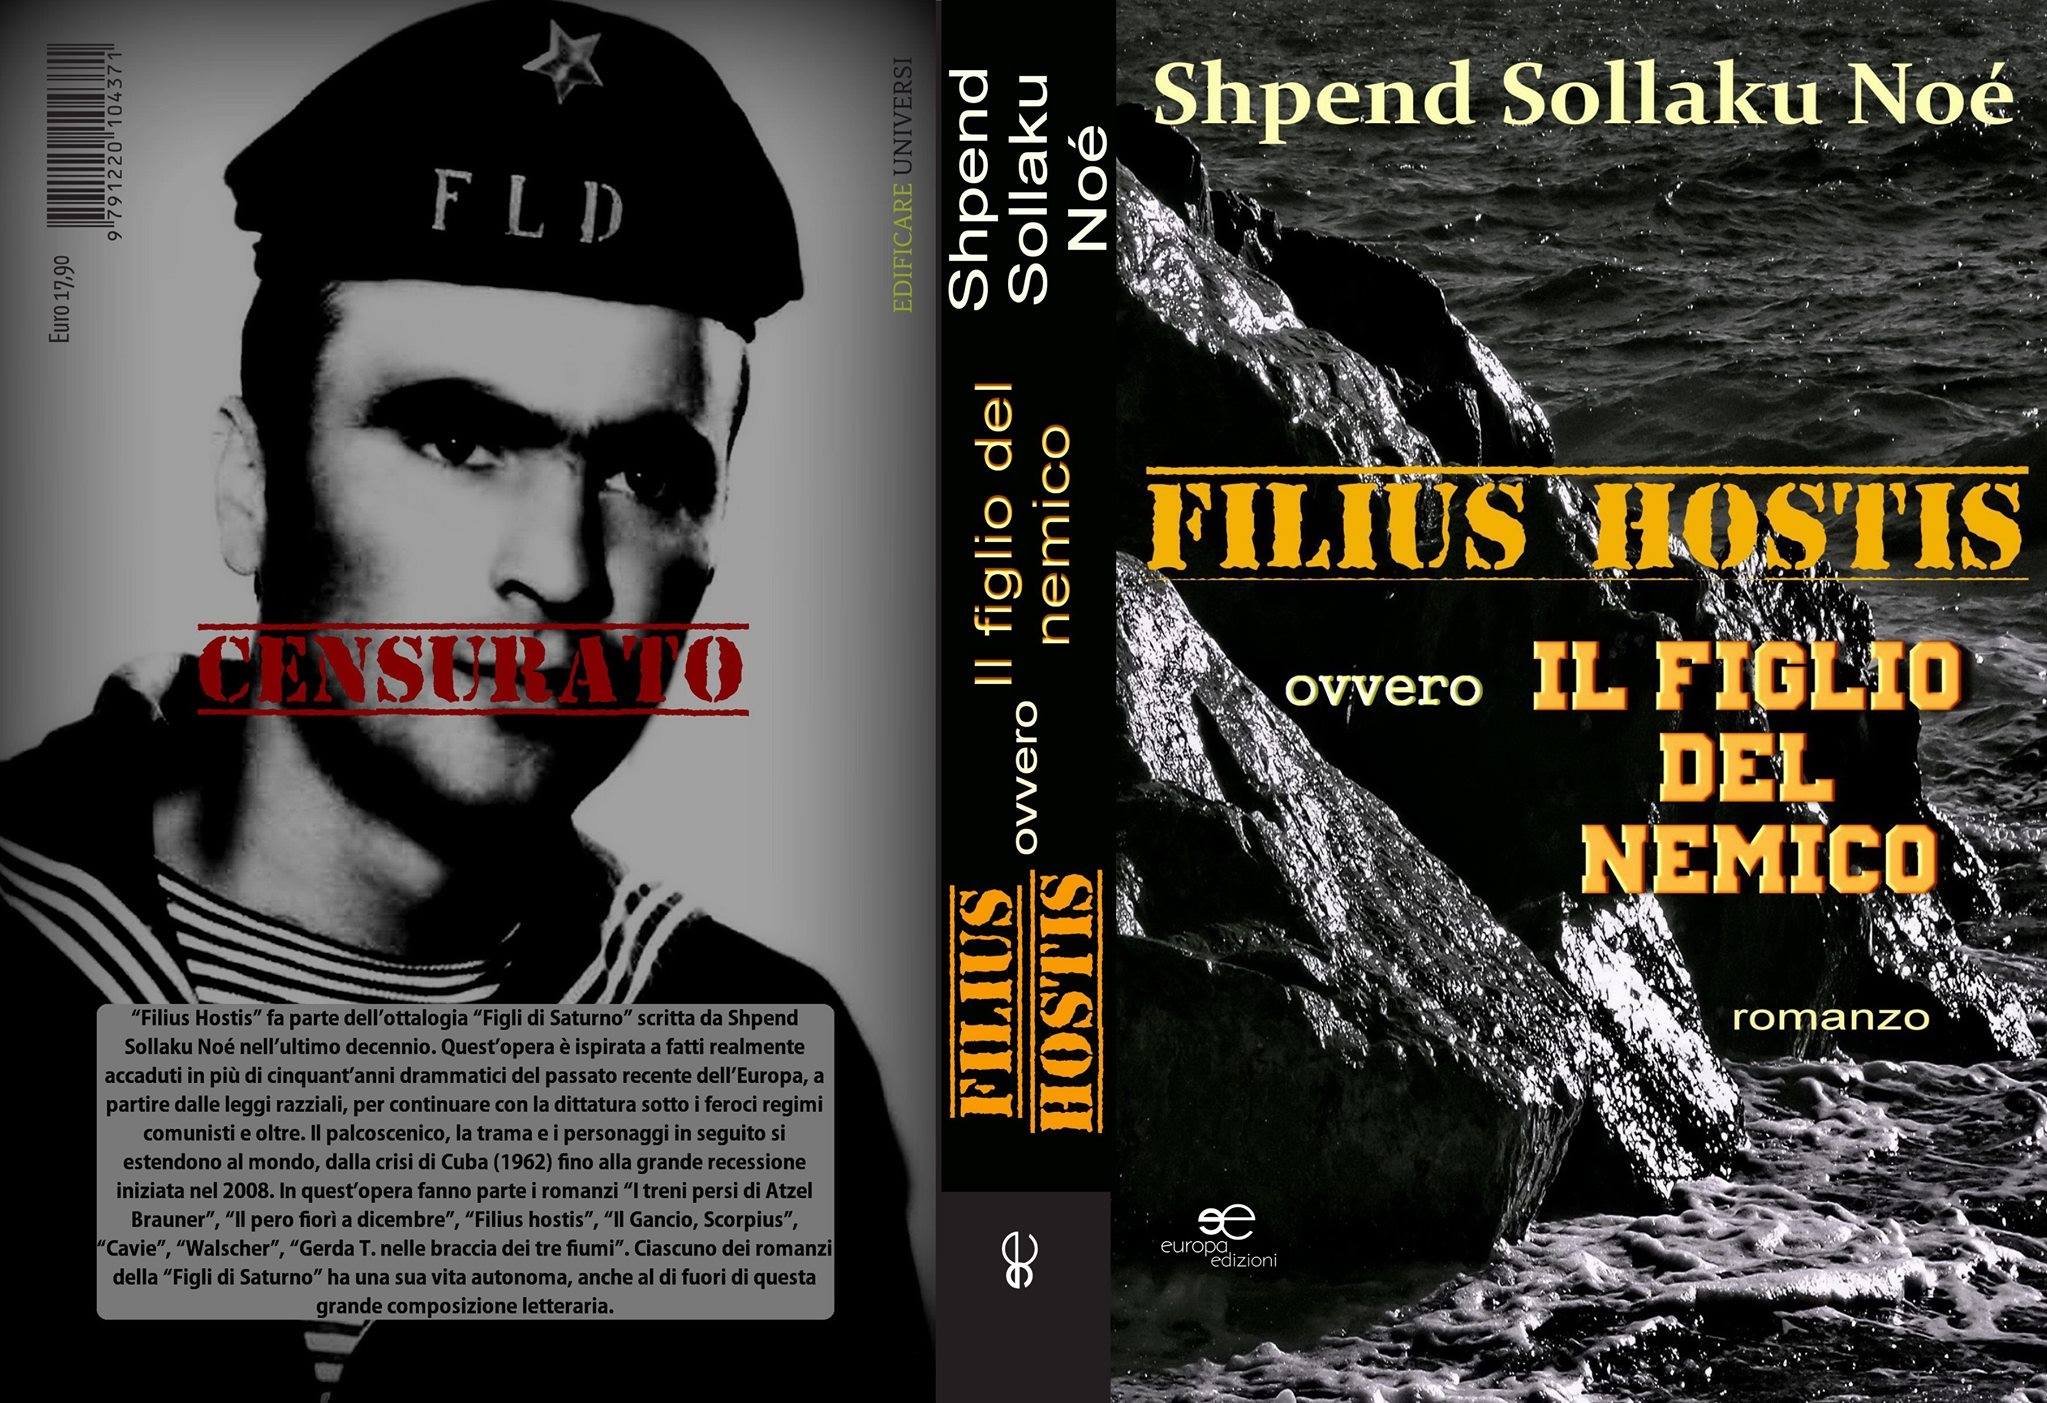 Shpend Sollaku Noè - “Filius Hostis ovvero Il figlio del nemico” - roman